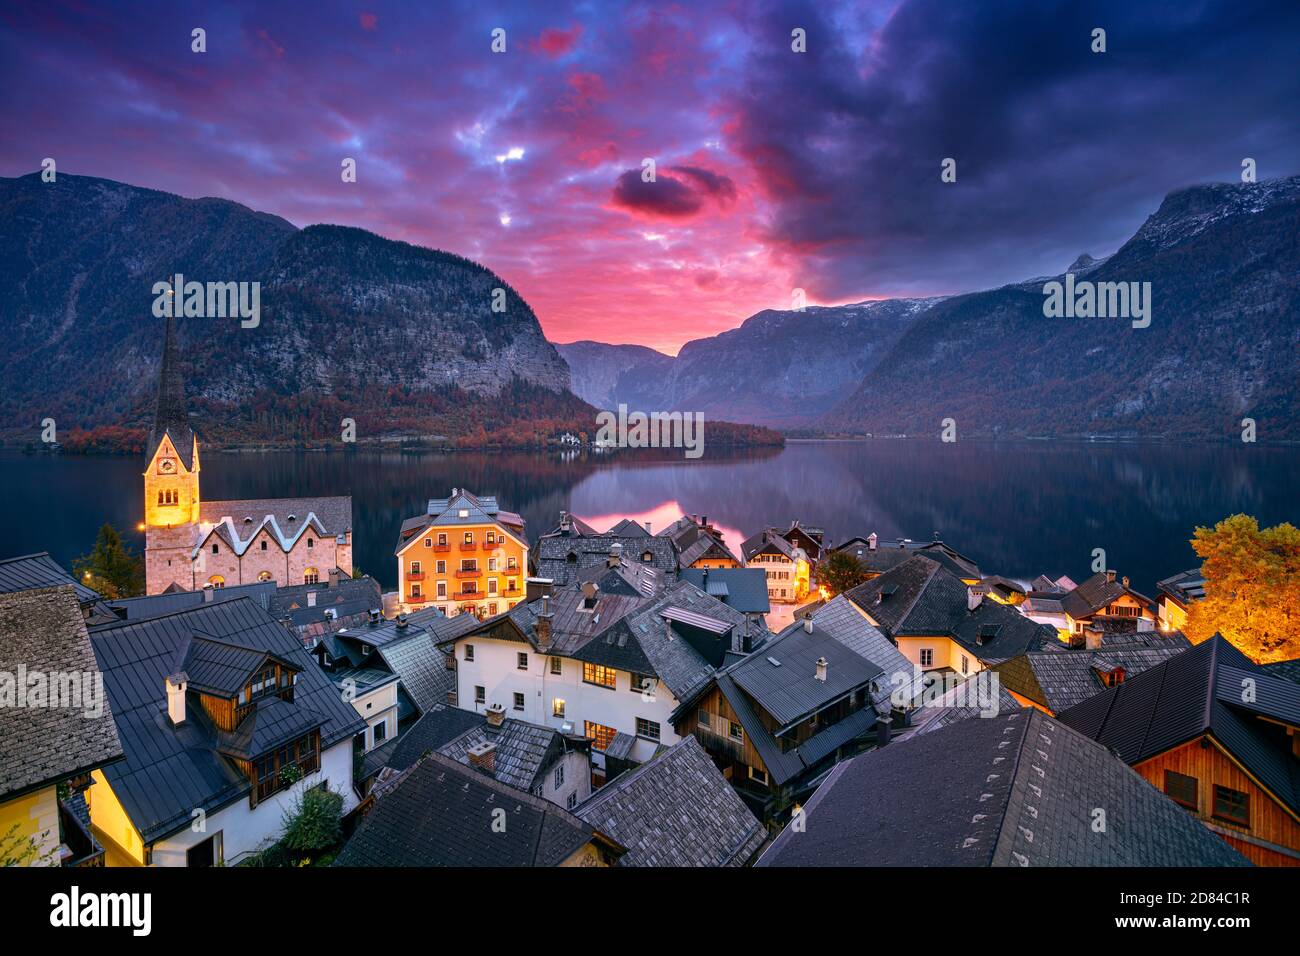 Hallstatt, Austria. Paisaje urbano imagen de la icónica aldea alpina Hallstatt en el espectacular amanecer de otoño. Foto de stock